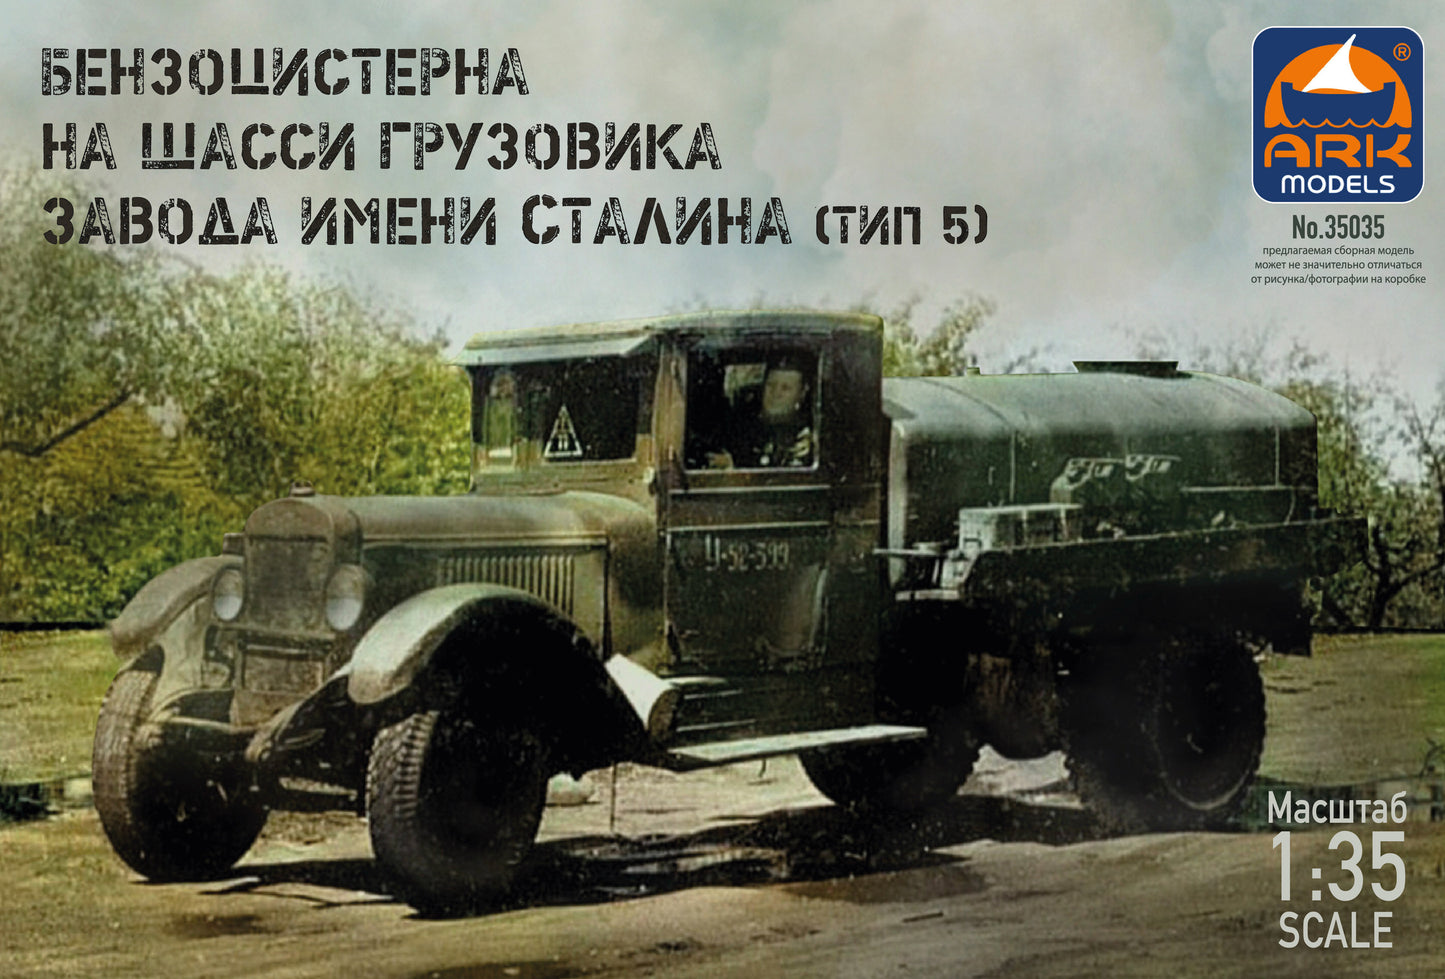 ARK-35035 - советский топливозаправщик БЗ-39 периода Второй мировой войны